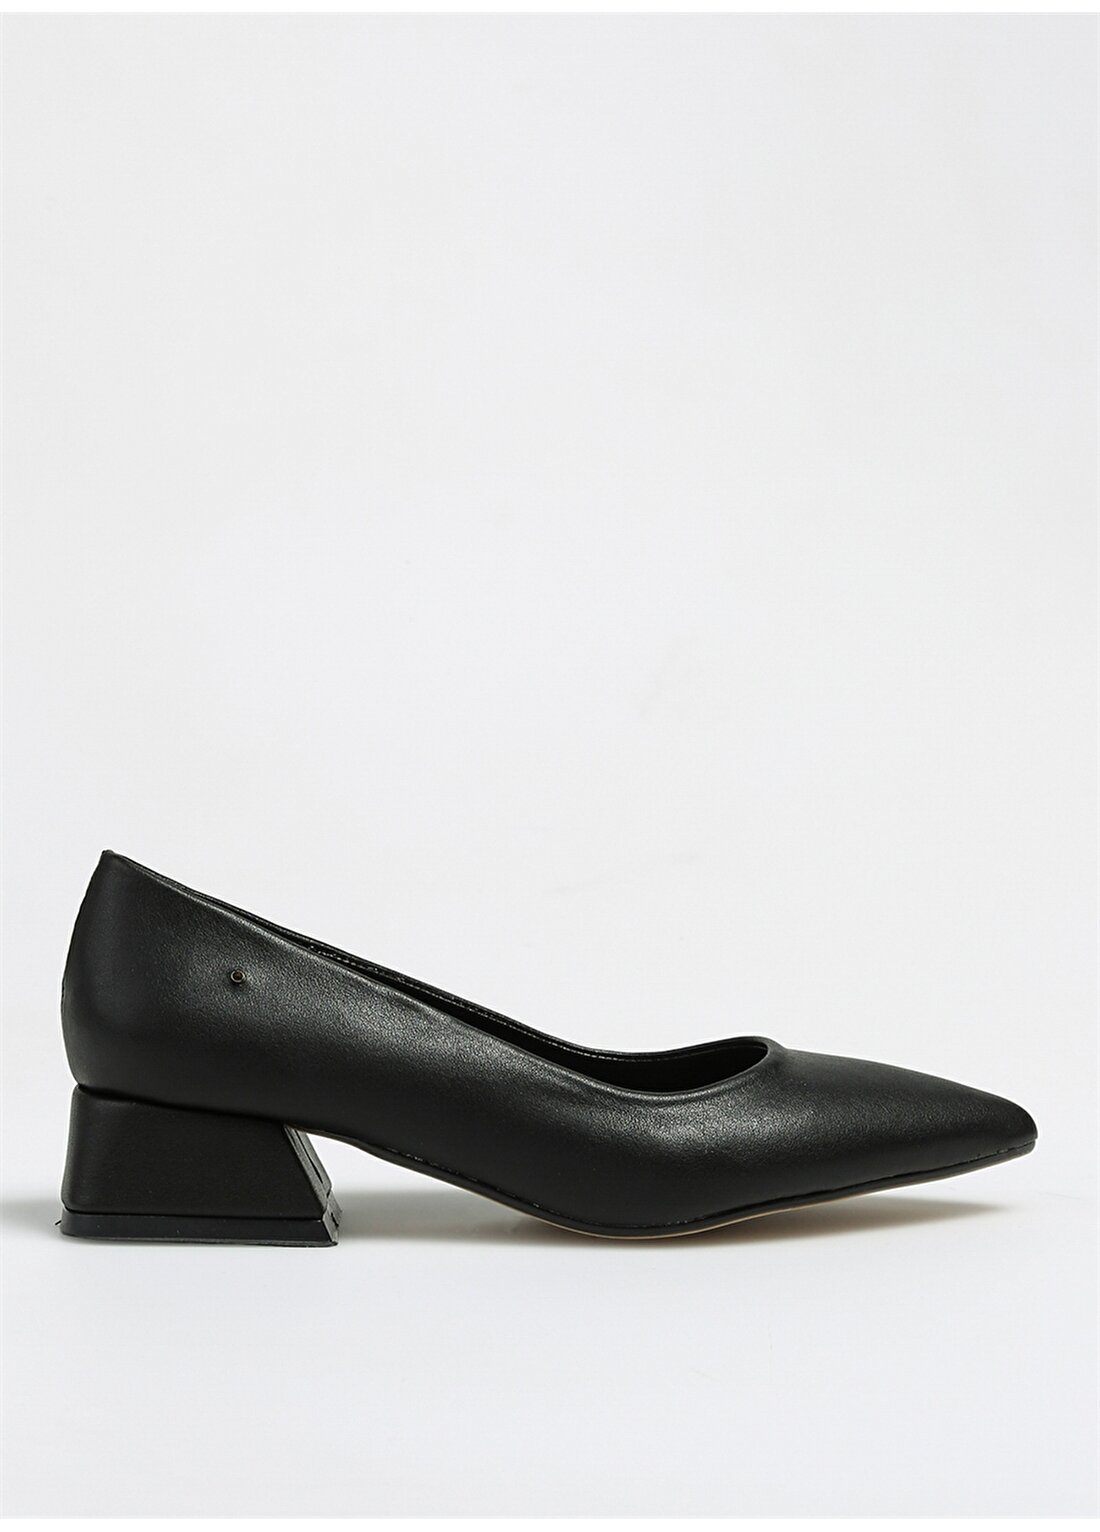 Pierre Cardin Siyah Kadın Topuklu Ayakkabı PC-52009